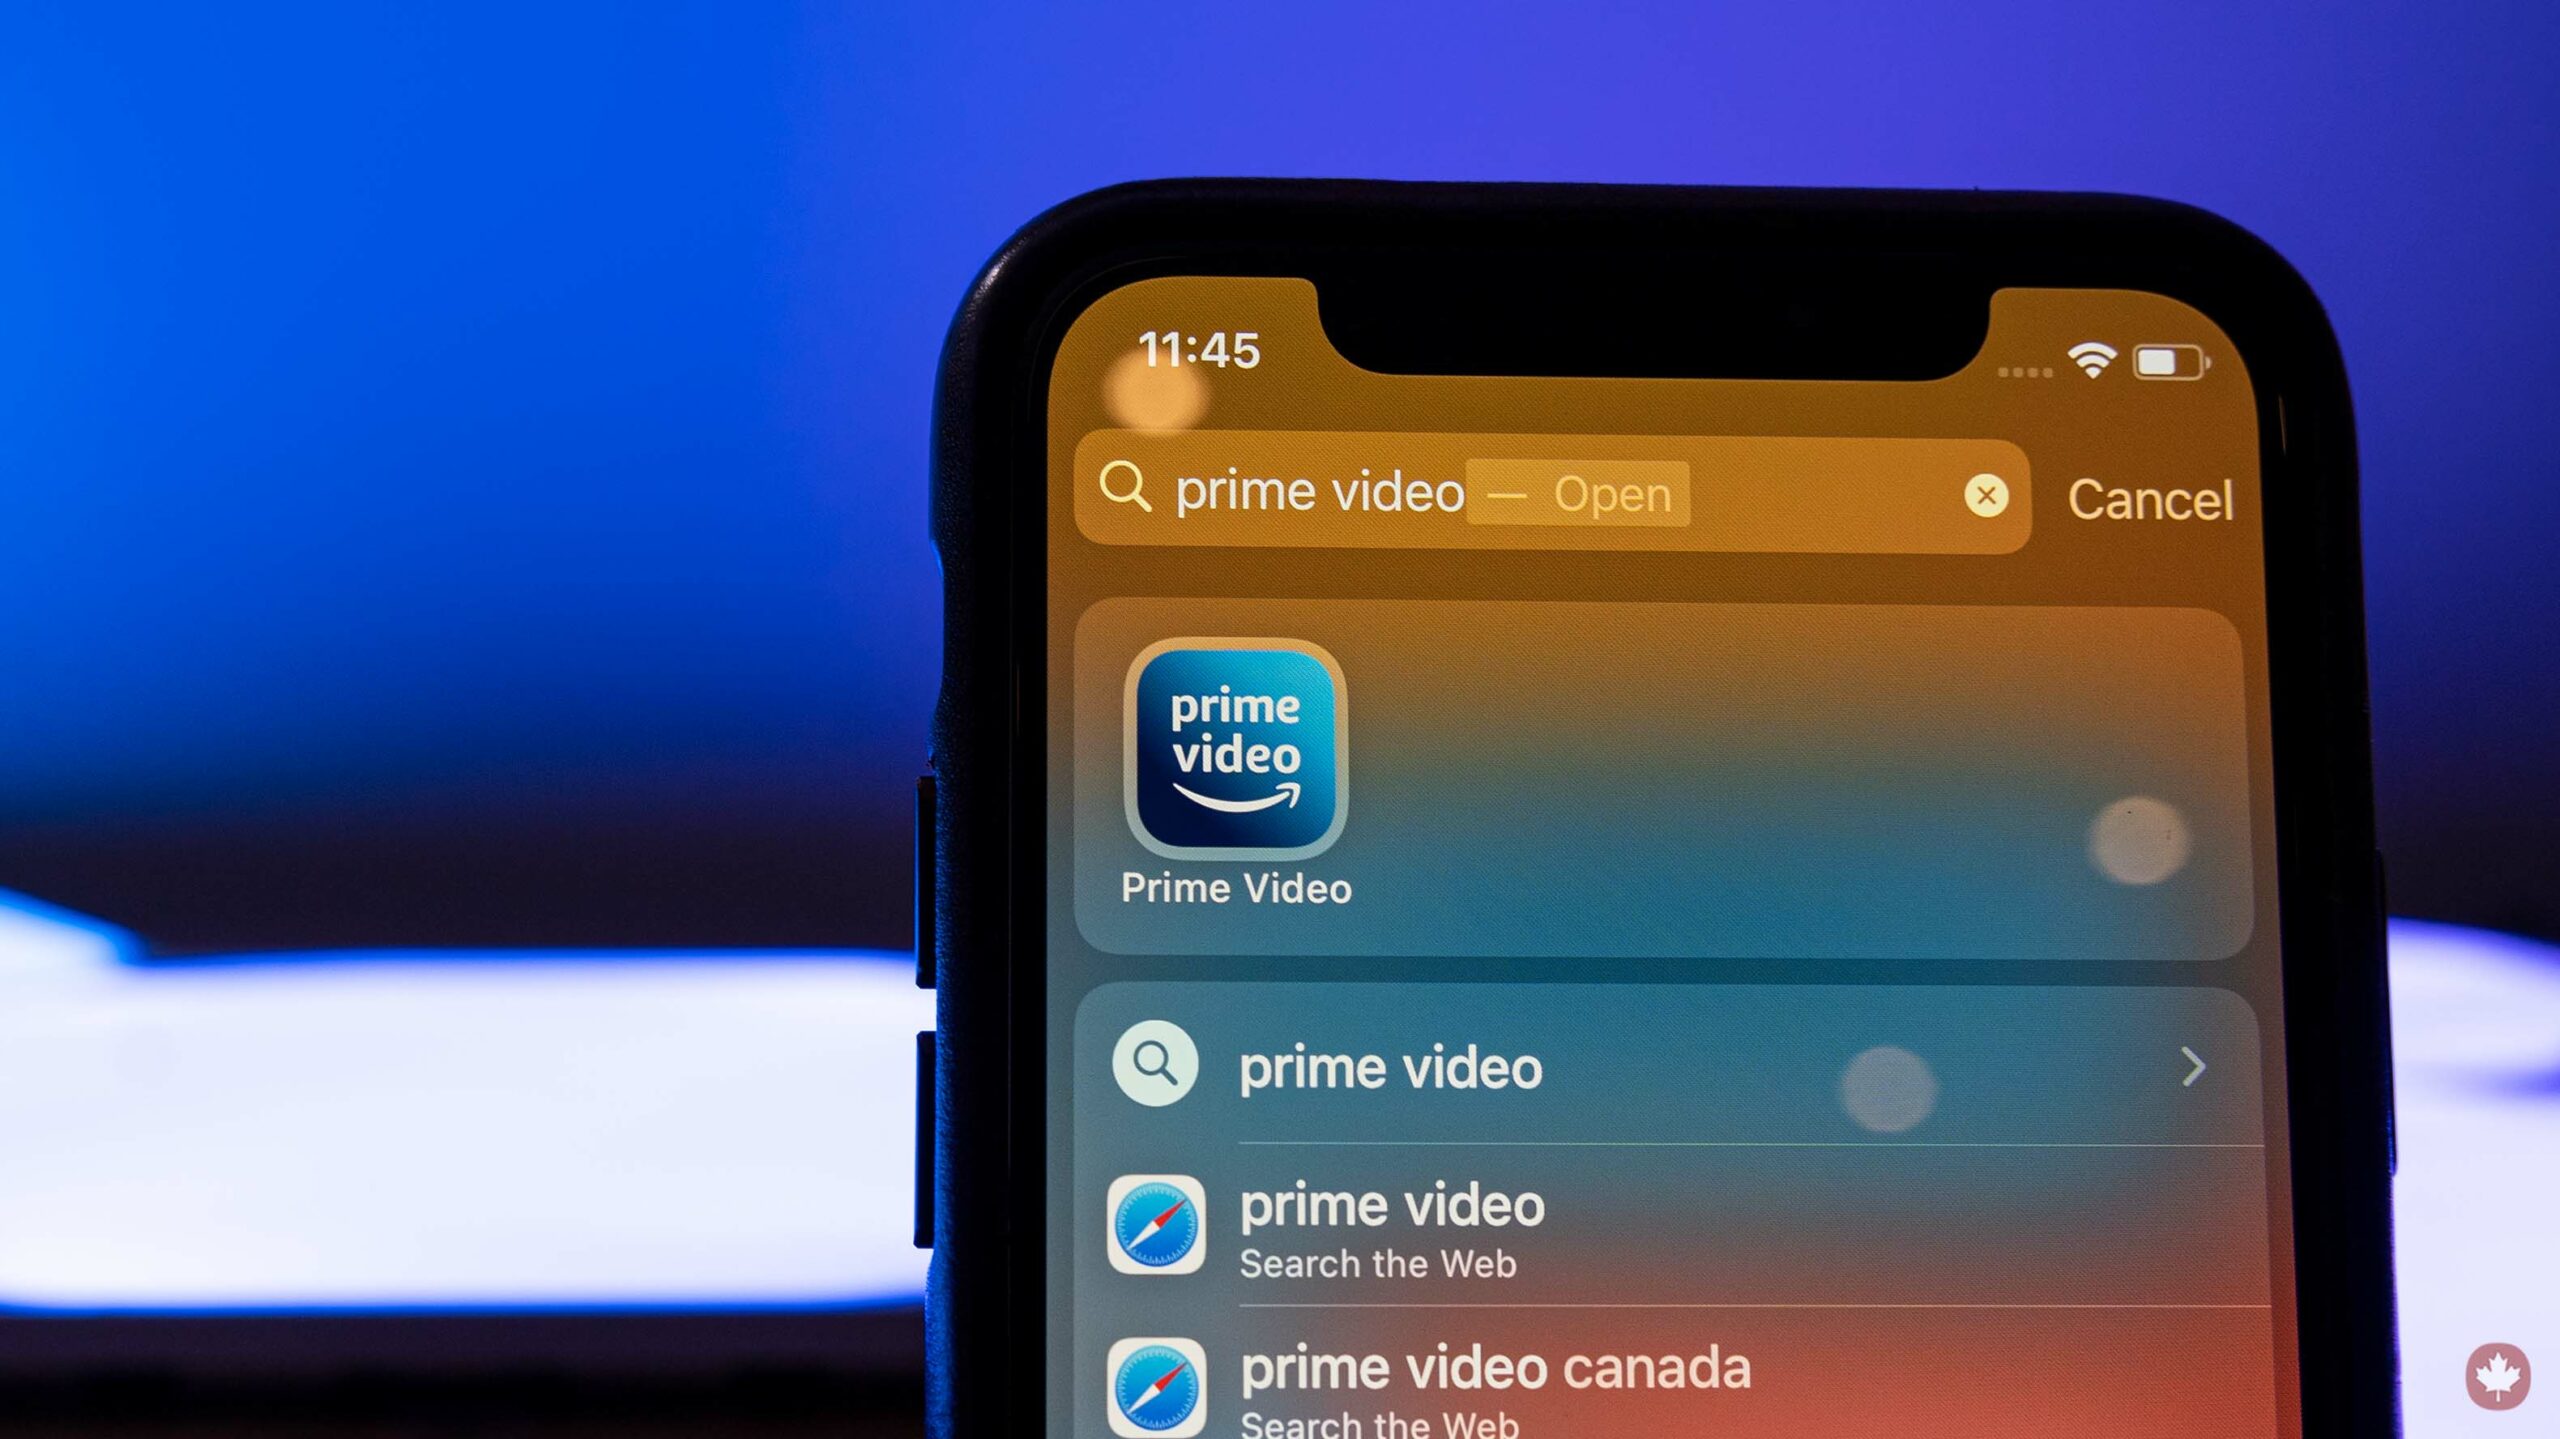 Amazon Prime Video app on iPhone